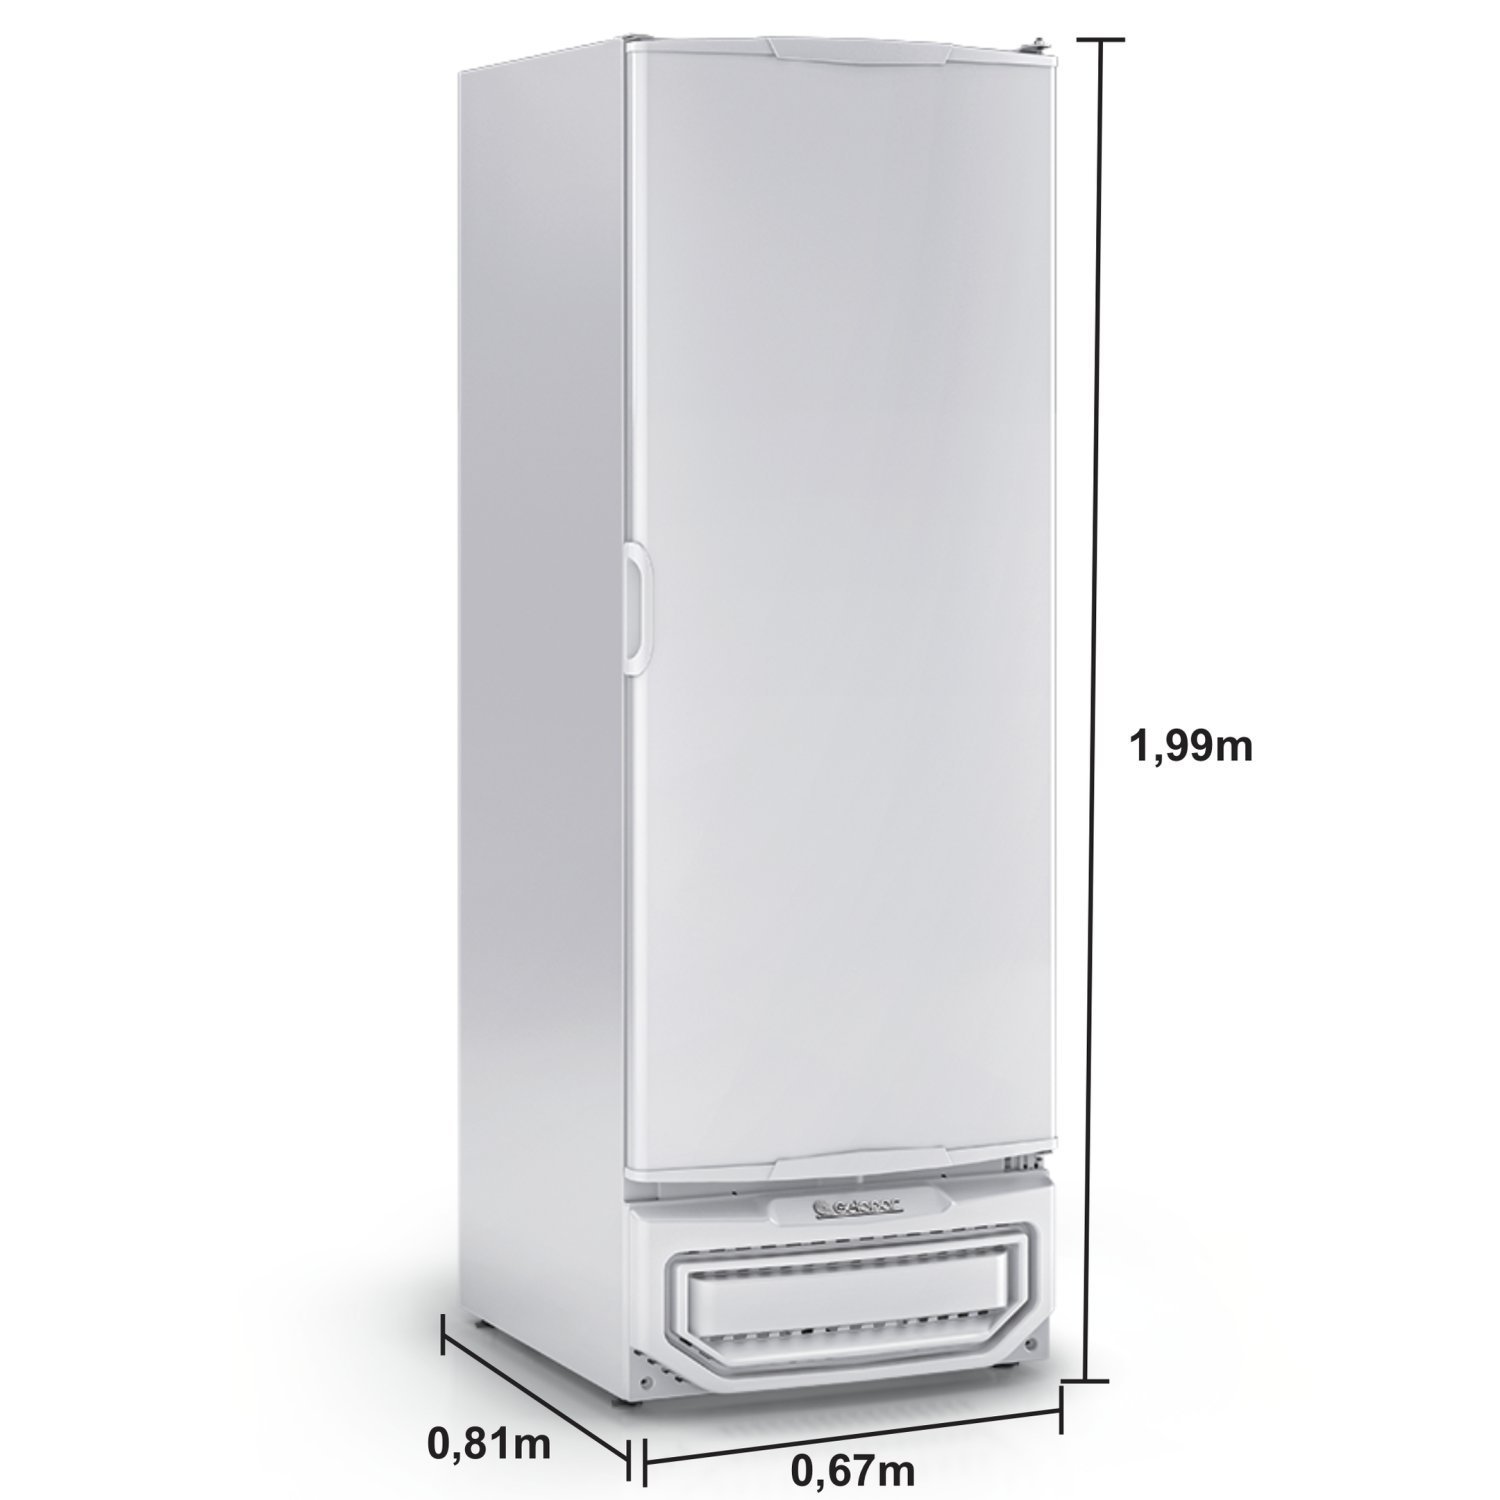 Freezer/Refrigerador Vertical Tripla Ação 577 litros Porta Cega GPC-57 TE BR Gelopar 220V - 4